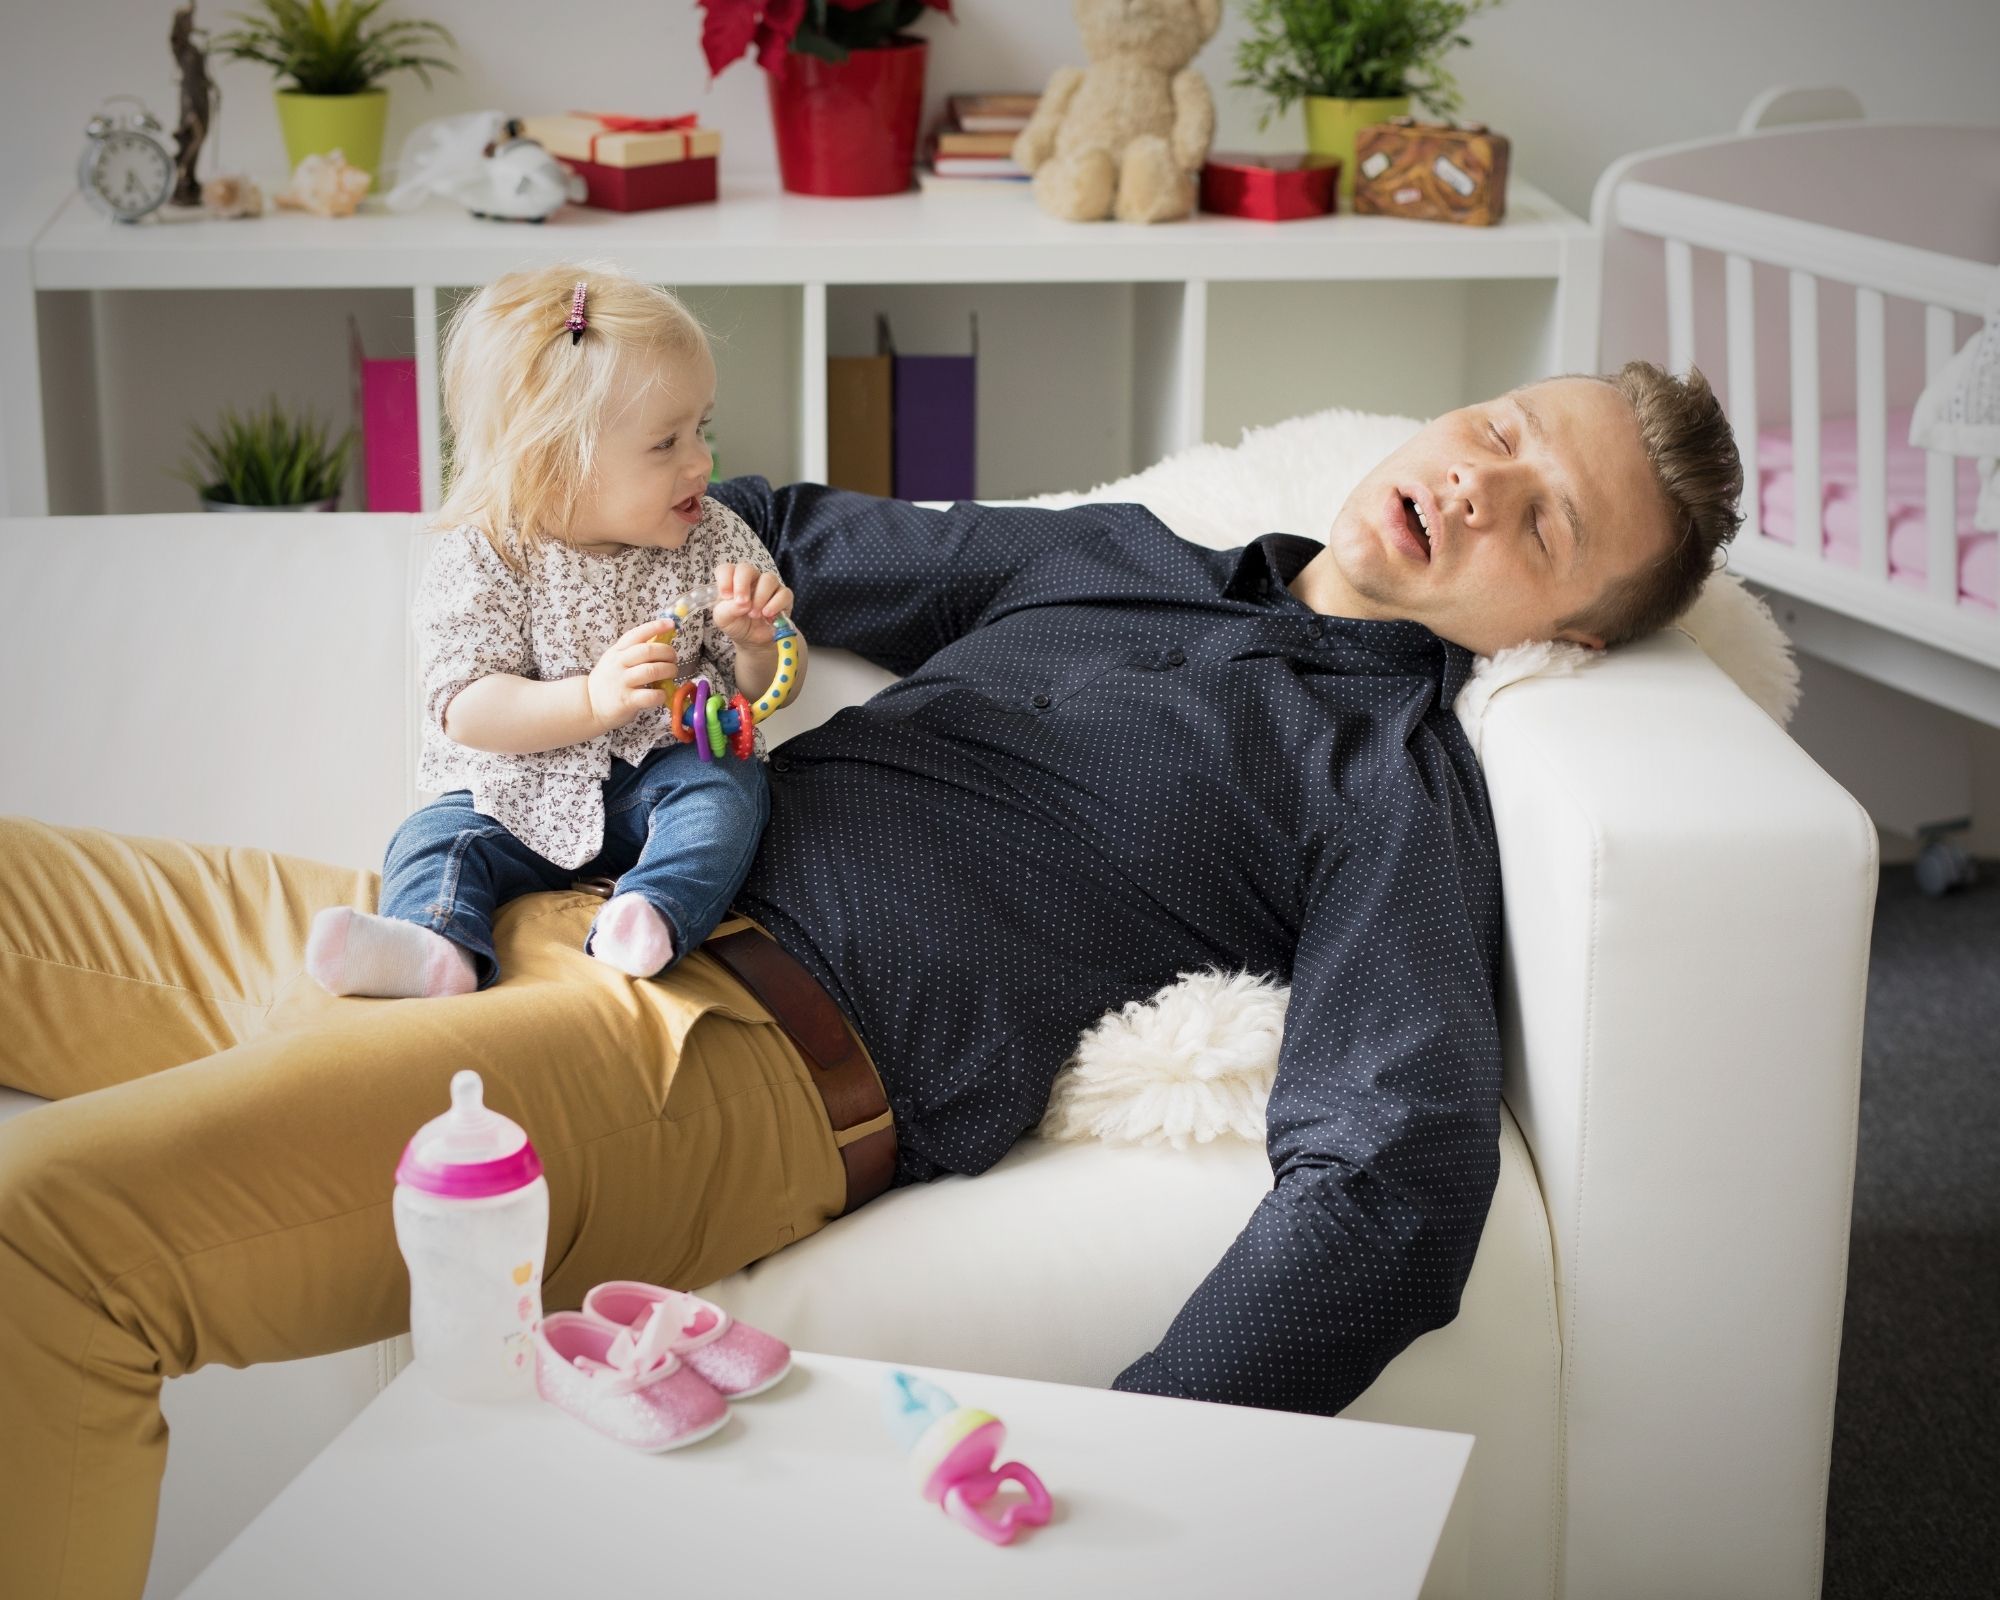 Vater schläft auf der Couch und sein Kind sitzt wach auf ihm